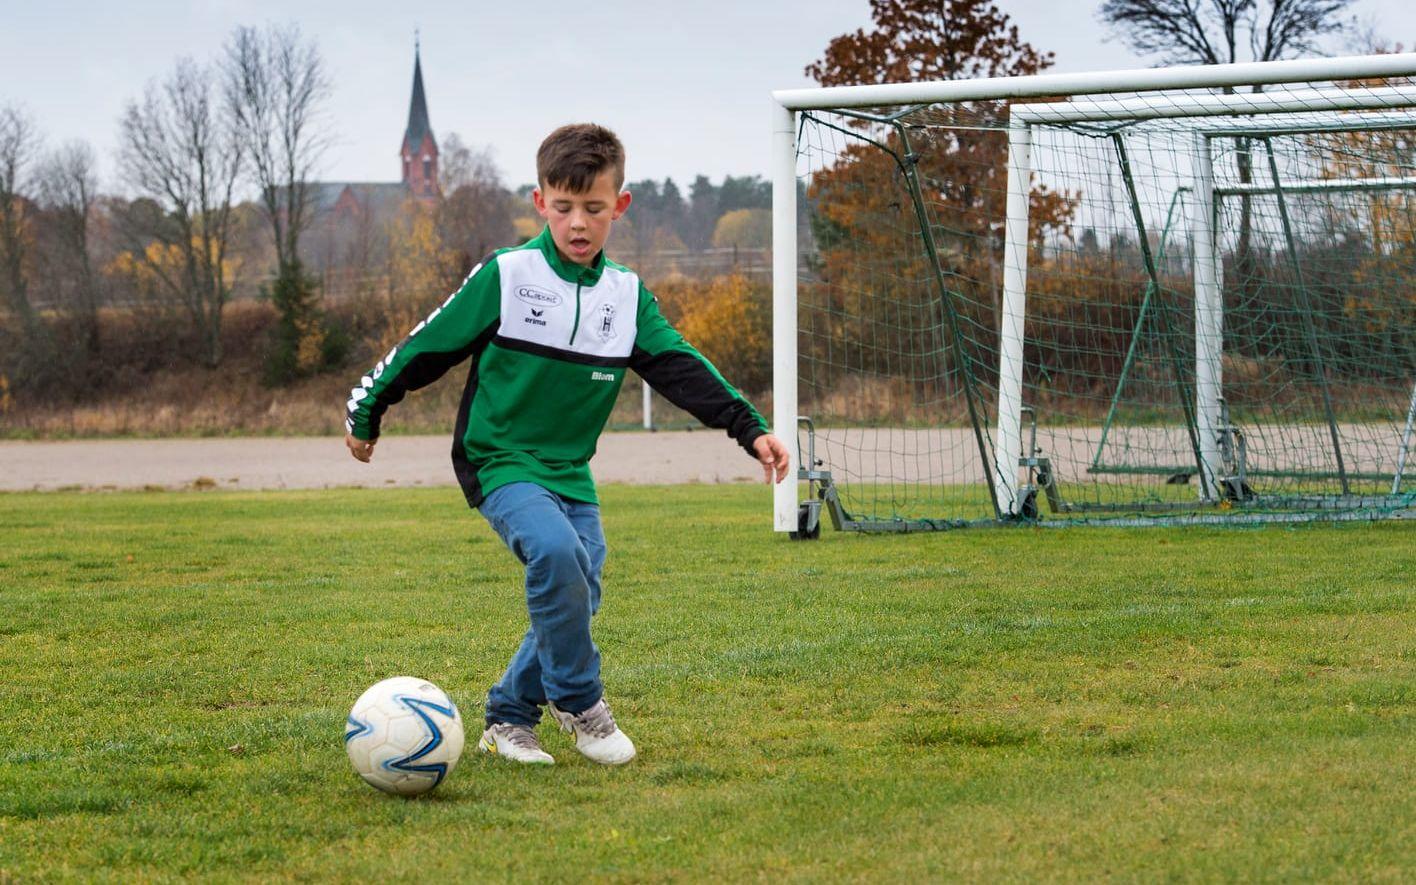 Axel Blom, 8 år, spelar fotboll i Högsäters GF precis som hans mamma Therese Blom också gjort när hon var ung.